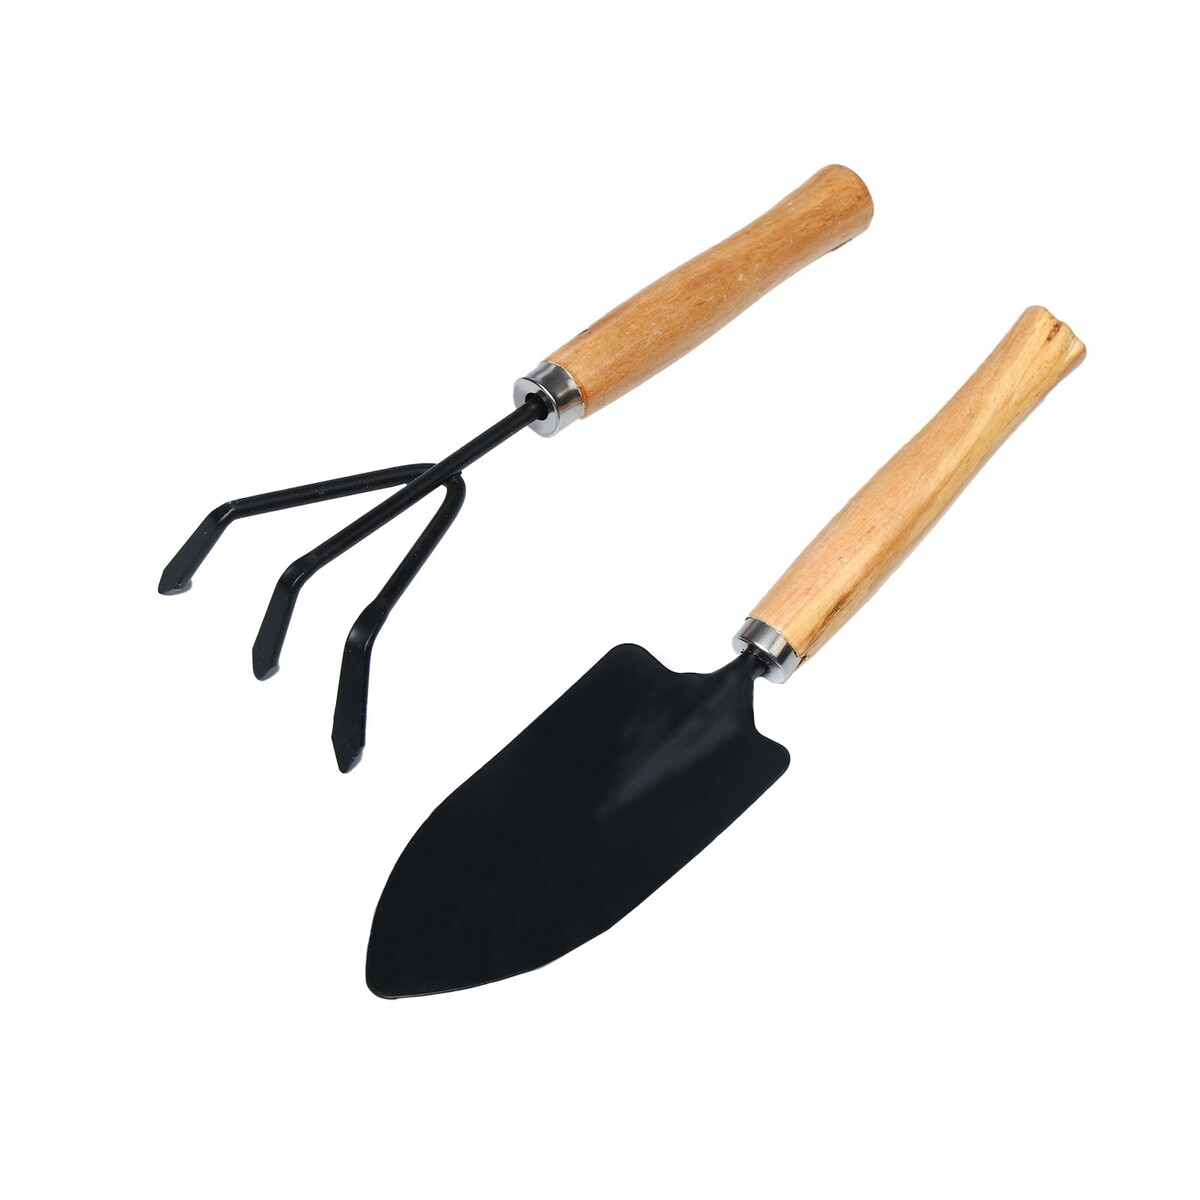 Набор садового инструмента, 2 предмета: рыхлитель, совок, длина 26 см, деревянные ручки набор садового инструмента greengo 2 предмета мотыжка совок длина 31 см пластиковые ручки